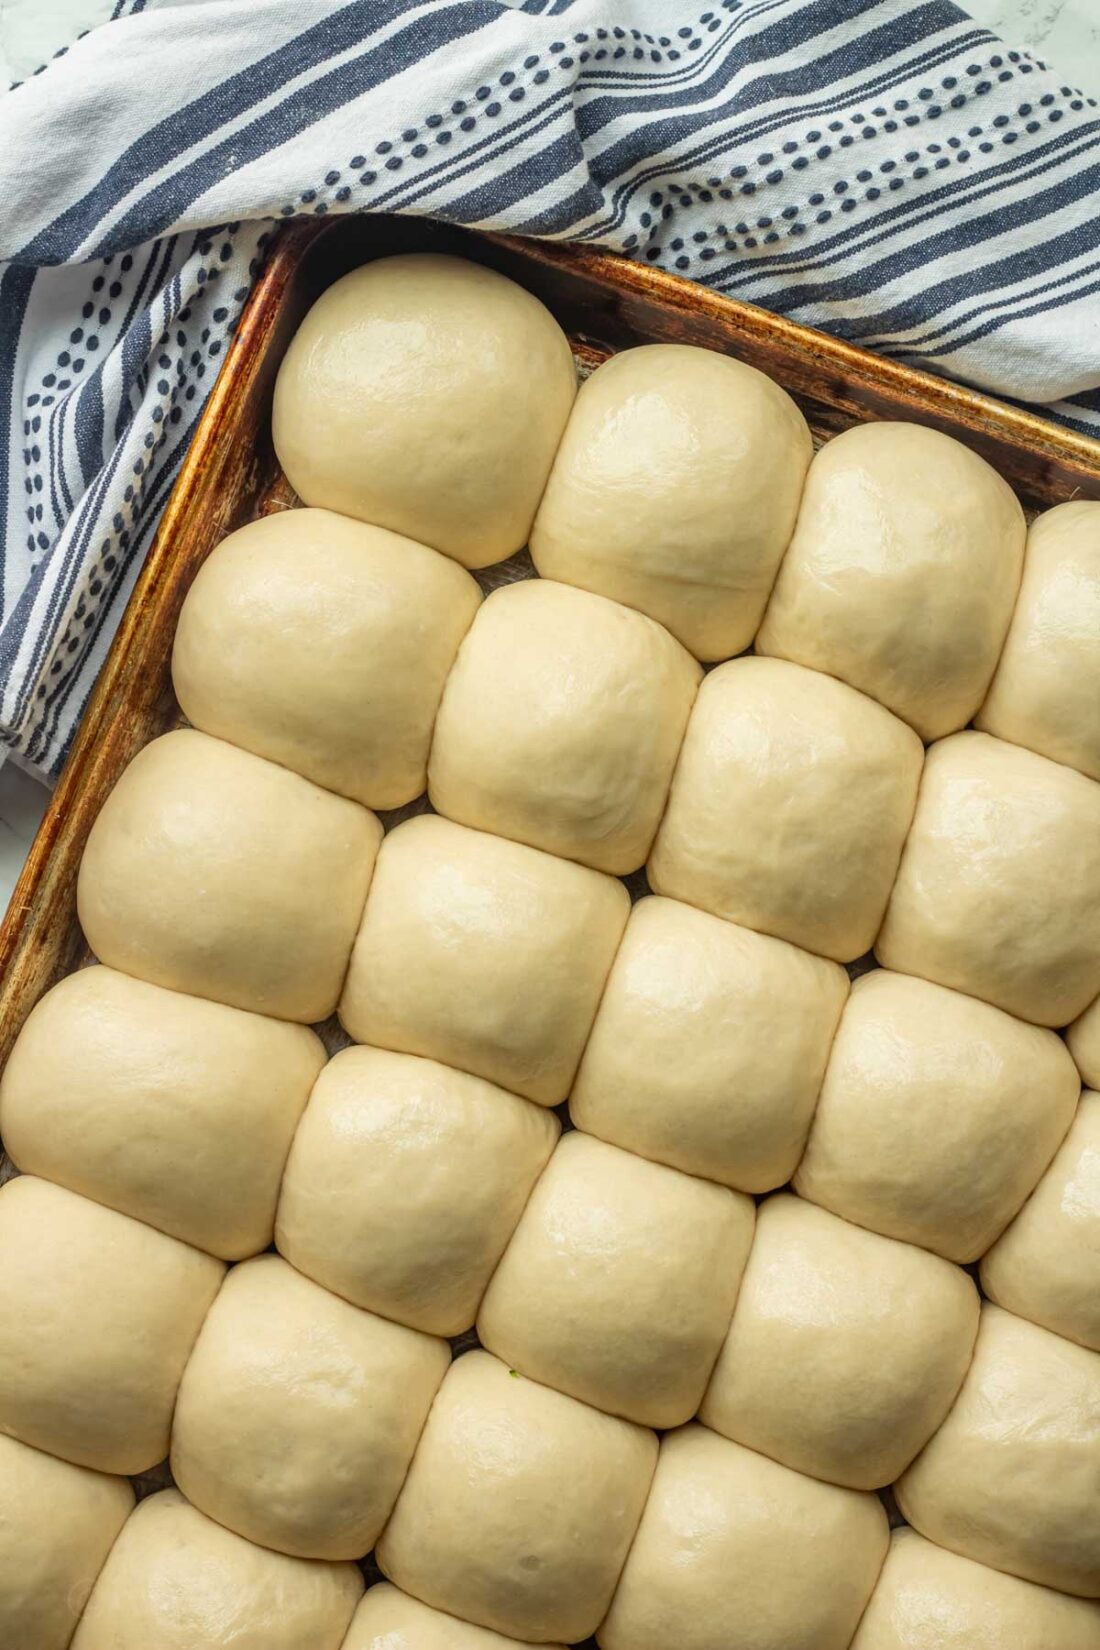 Risen raw rolls in rows on metal baking pan. 